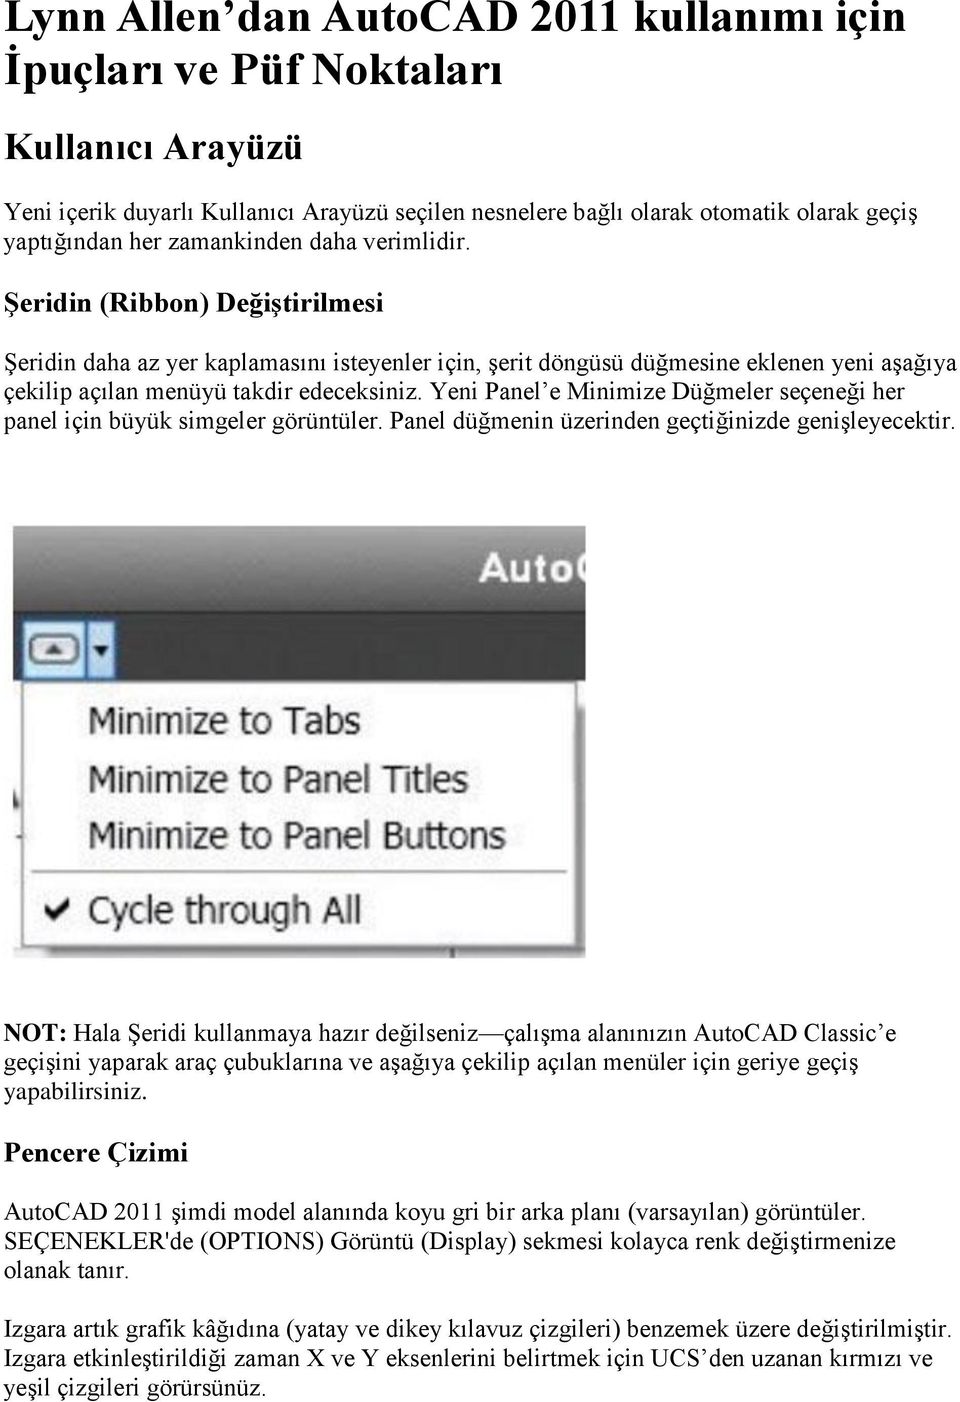 Lynn Allen dan AutoCAD 2011 kullanımı için İpuçları ve Püf Noktaları - PDF  Ücretsiz indirin